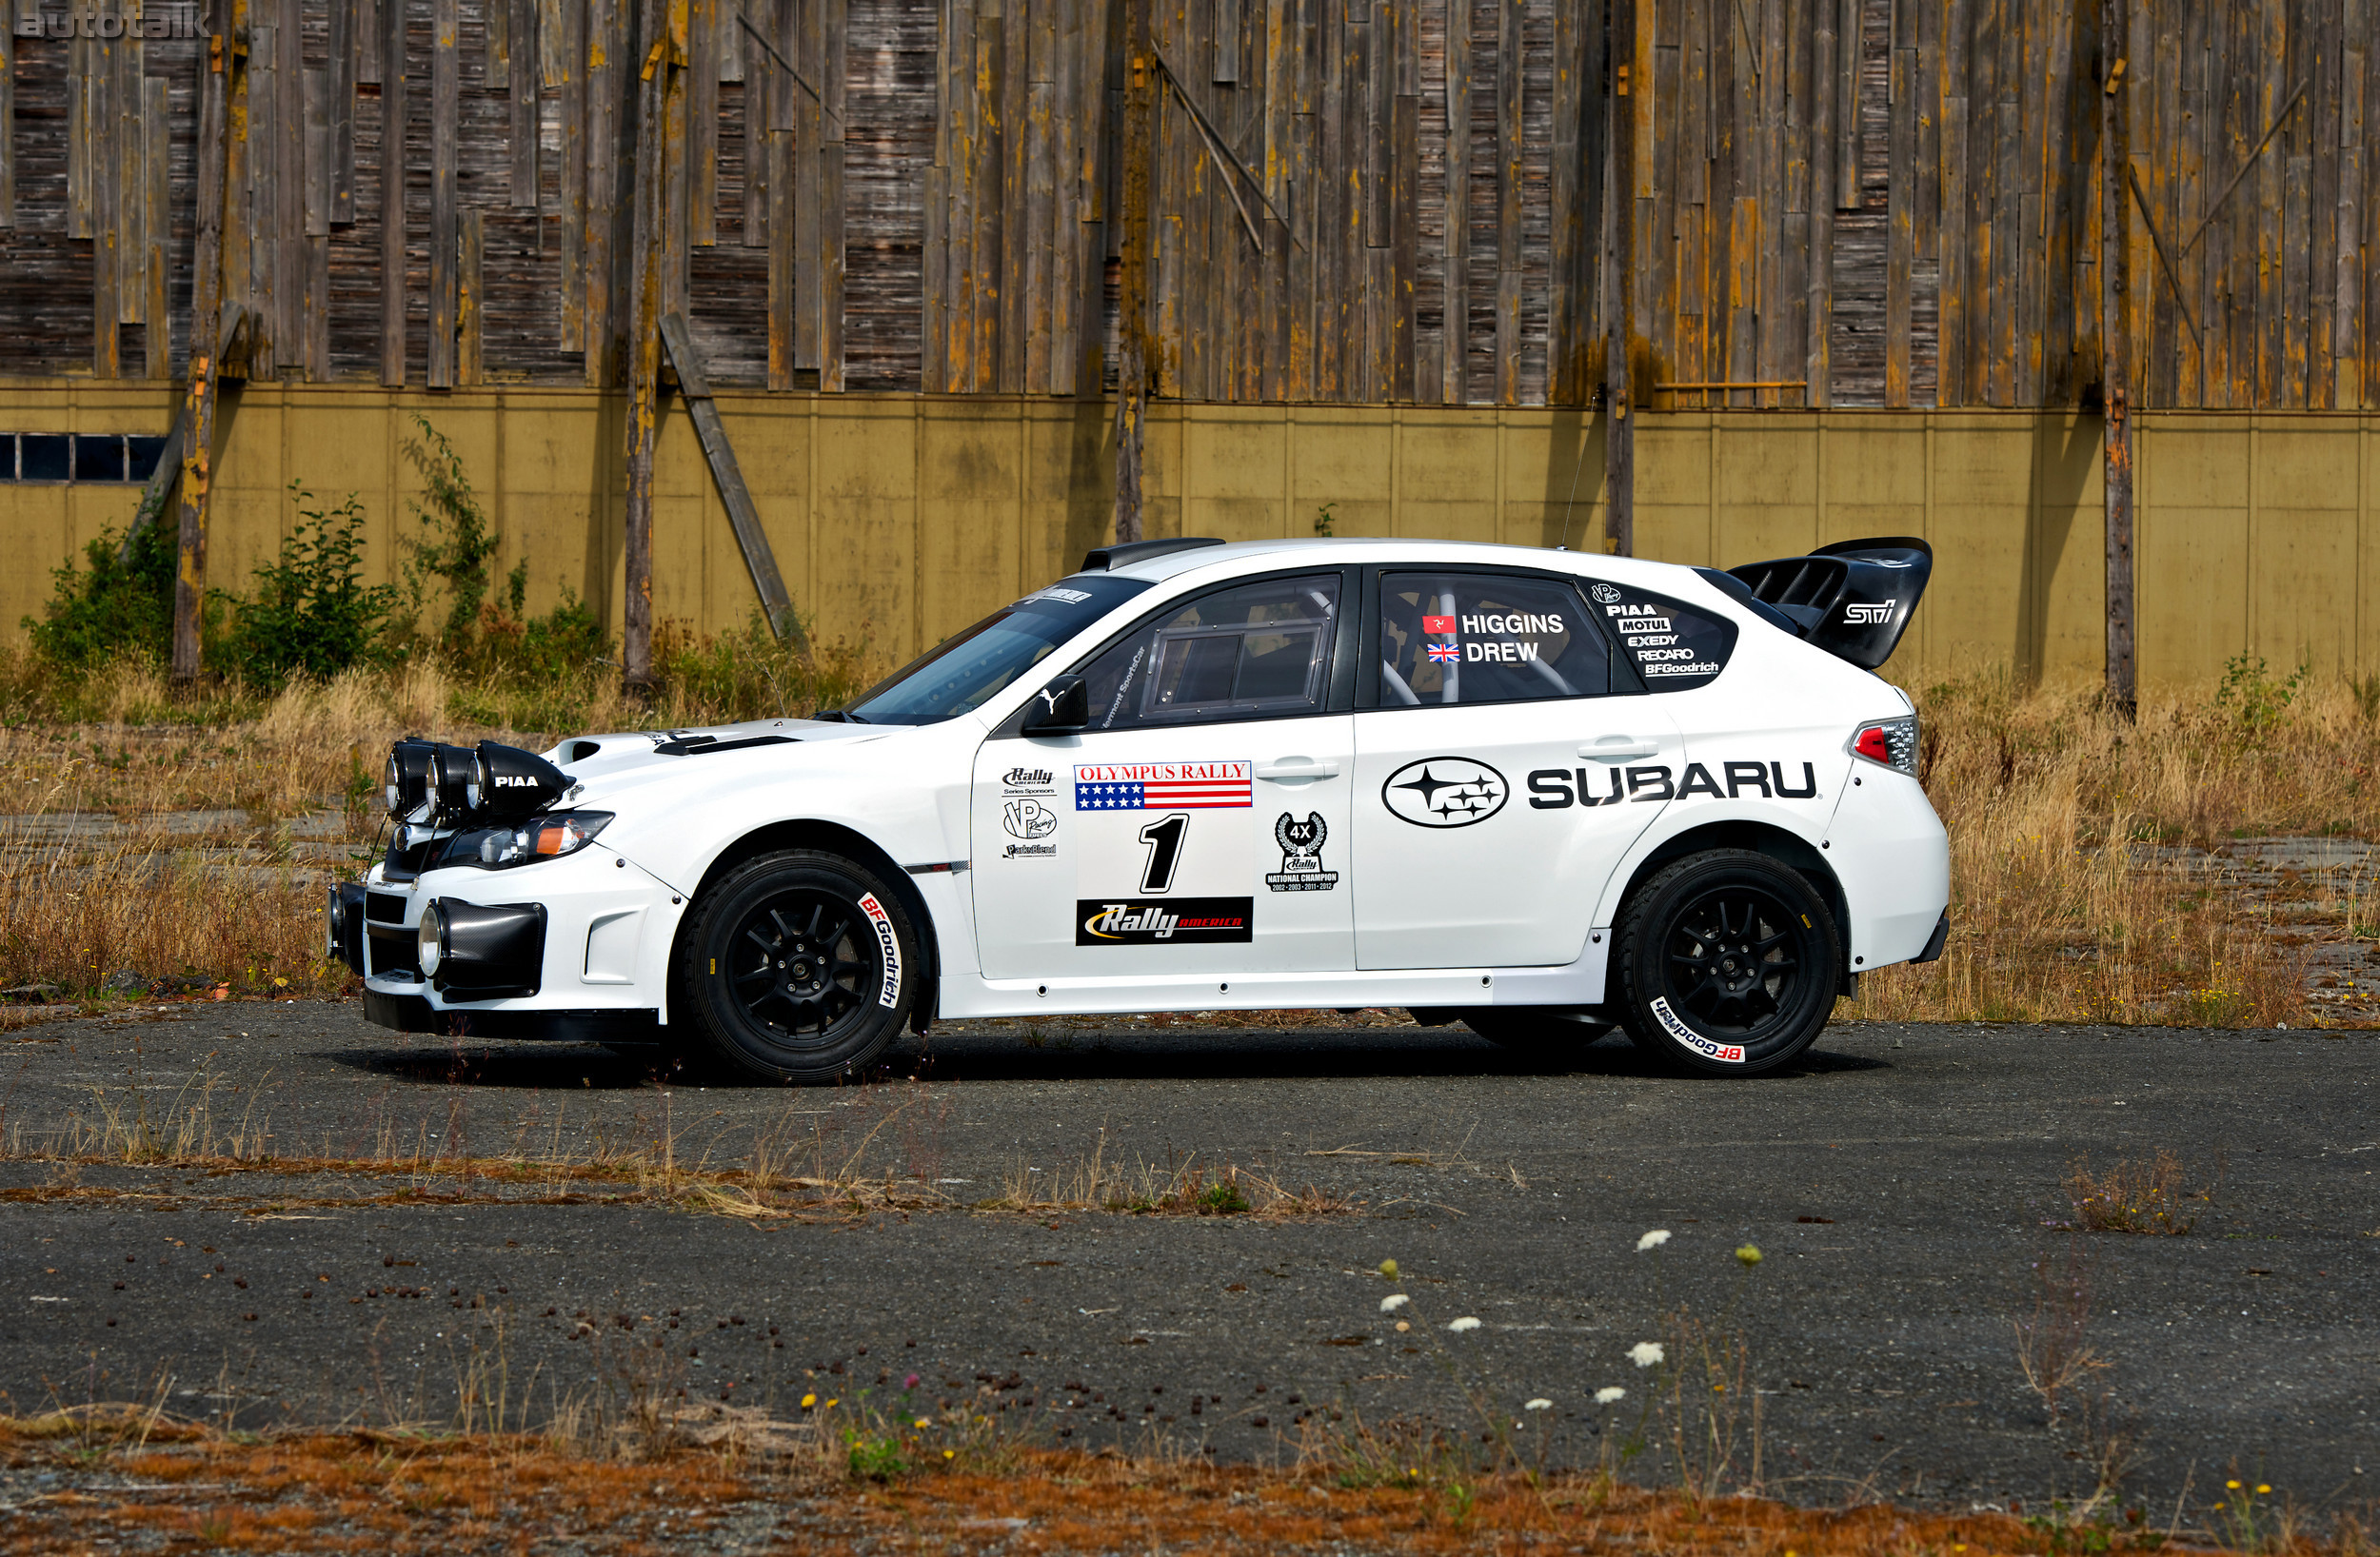 2012 Subaru Olympus Rally